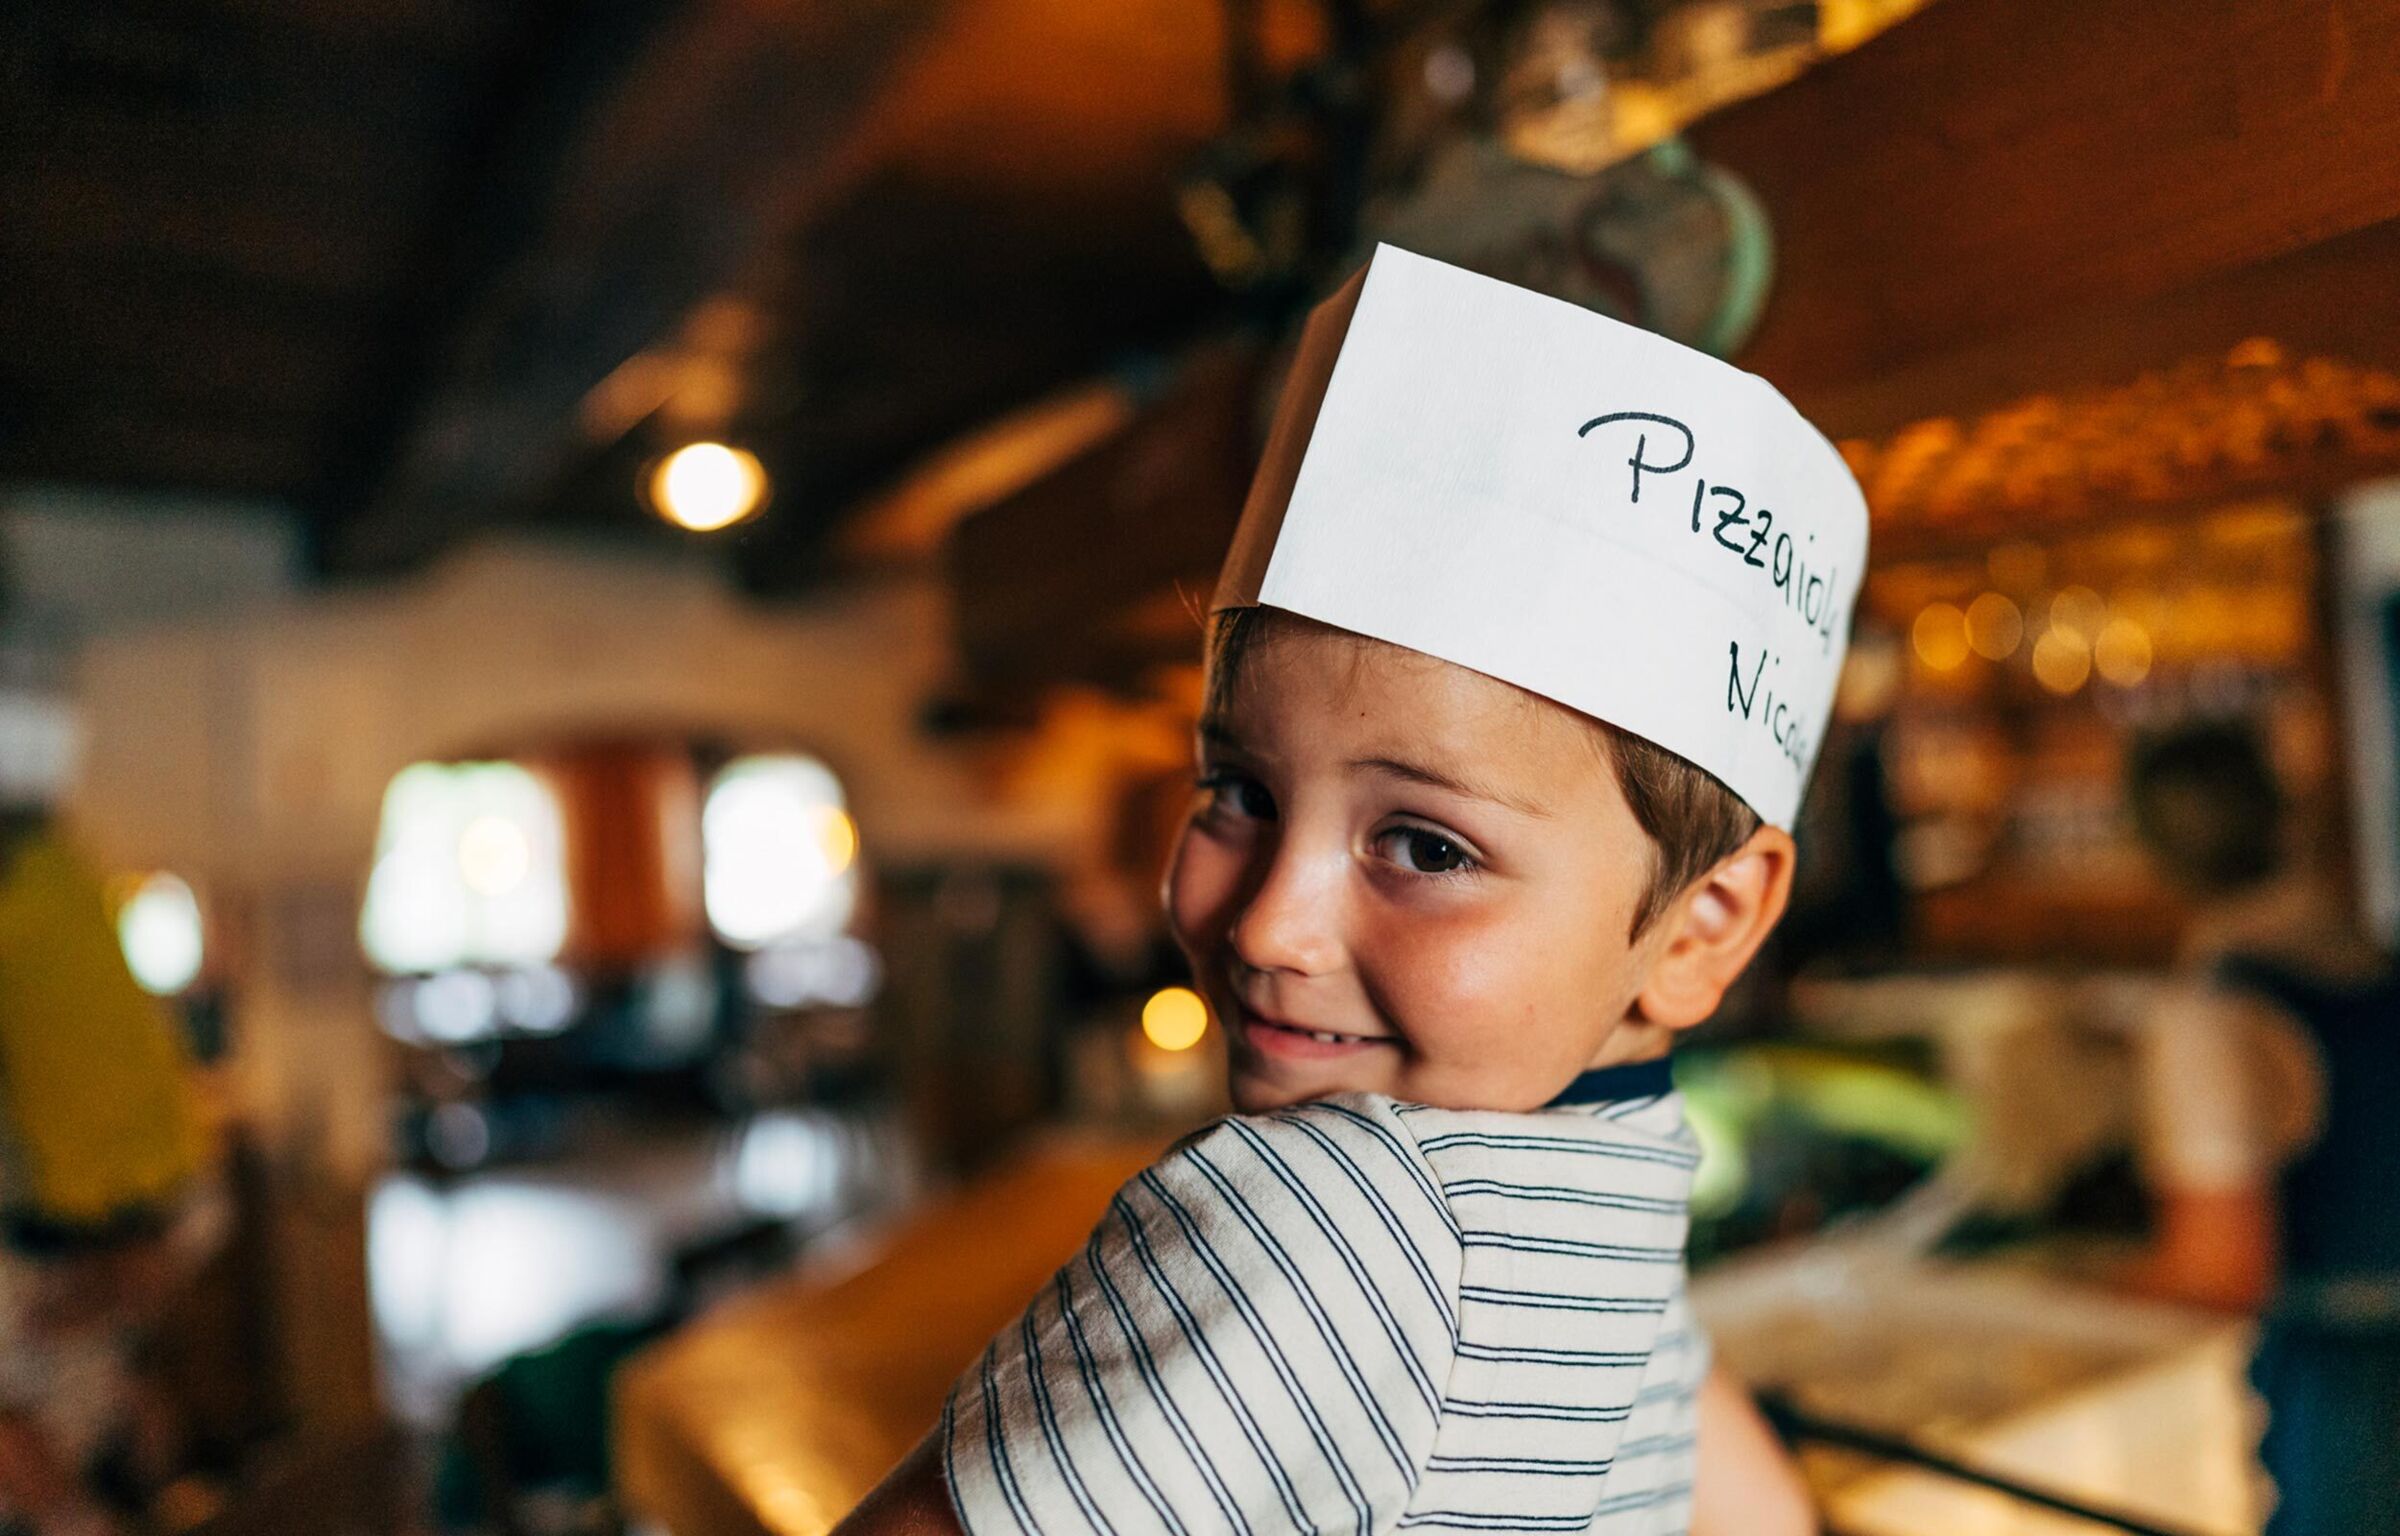 Il bambino ha un cappello da cuoco con la scritta "corso di pizza" e sorride alla telecamera.